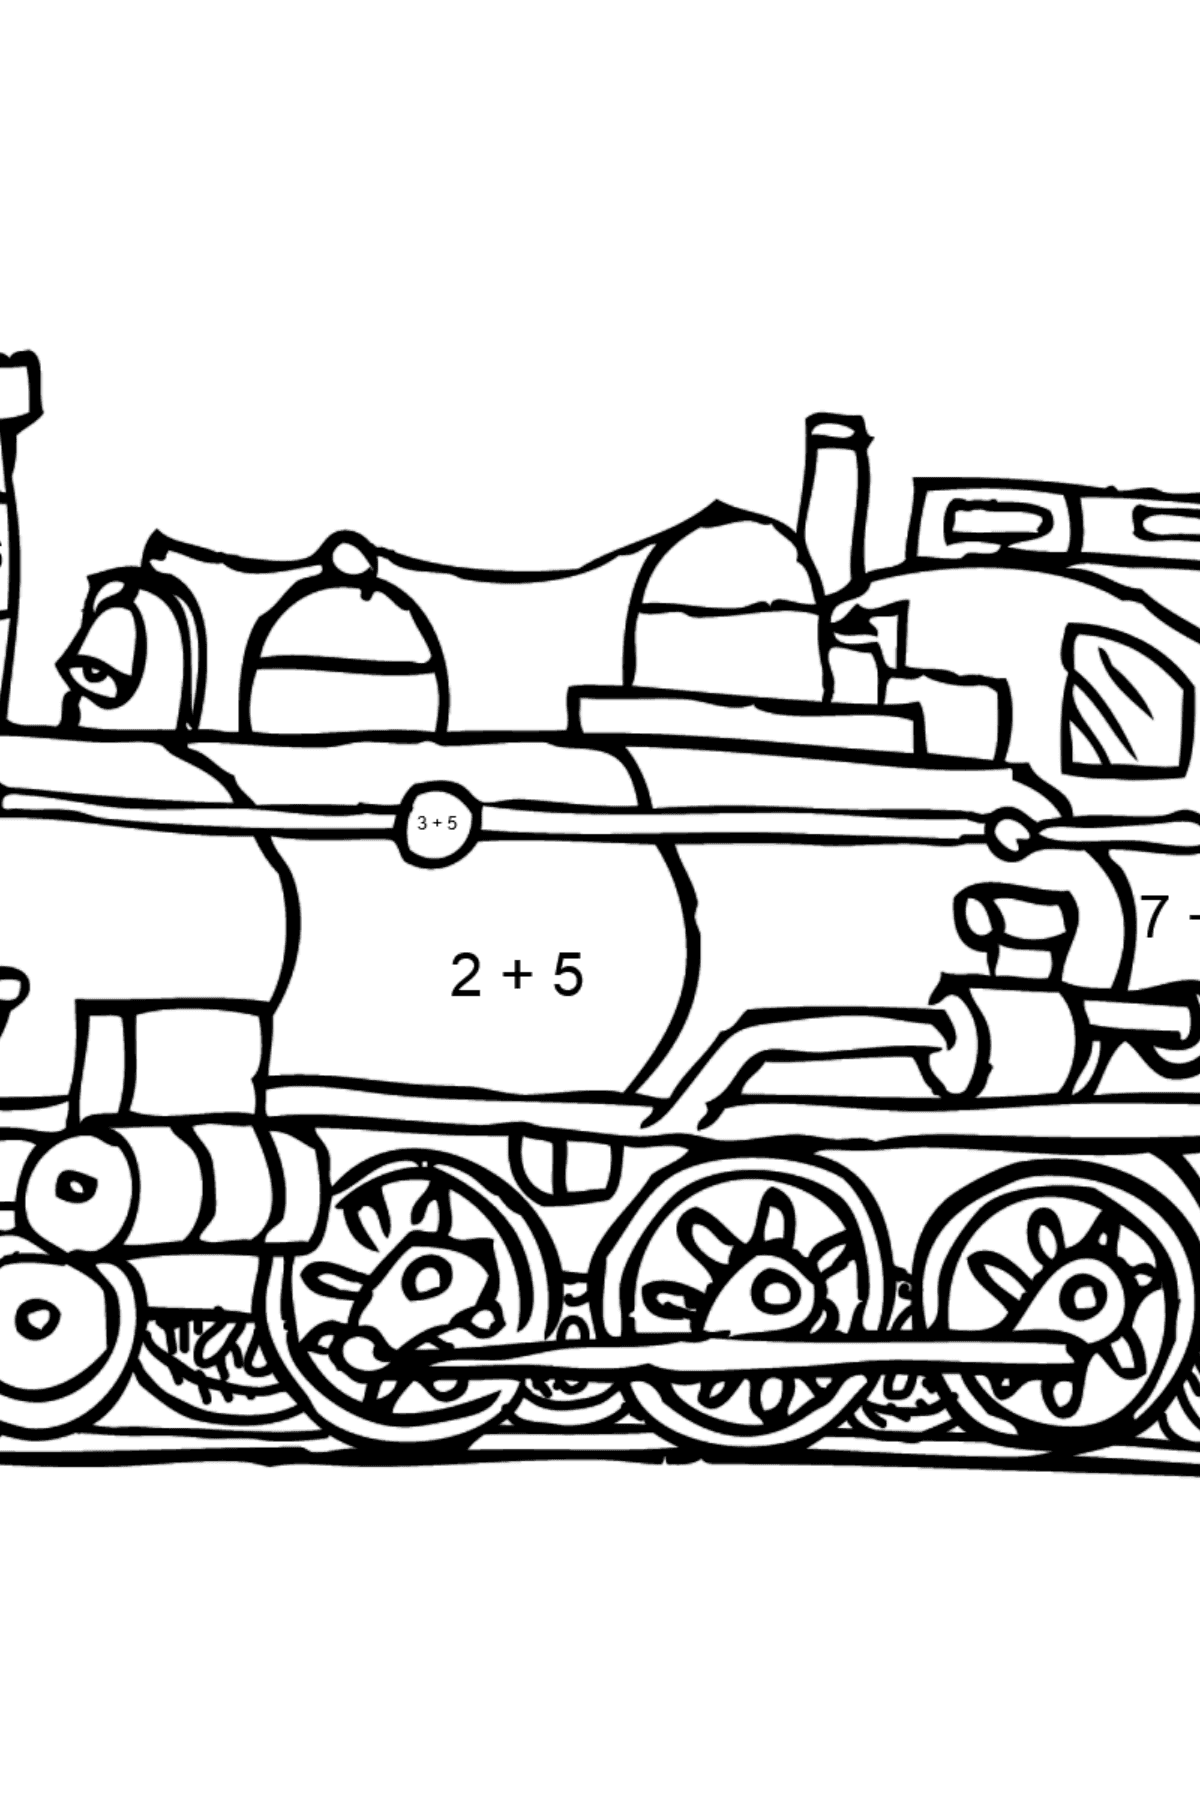 Tegning til fargelegging lokomotiv - Matematisk fargeleggingsside - addisjon for barn